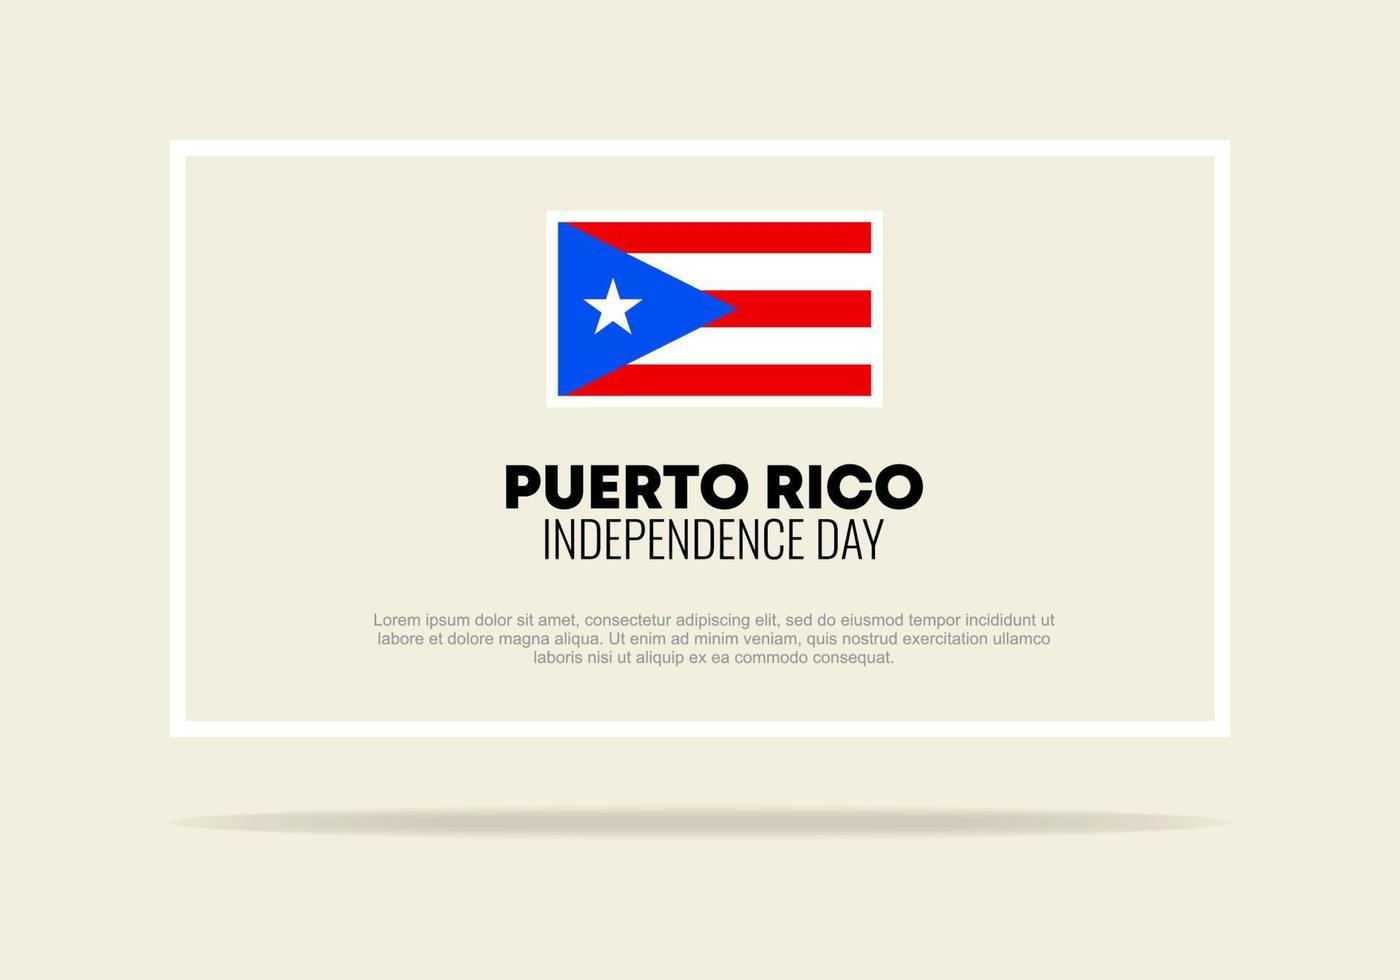 puerto rico unabhängigkeitstag hintergrund am 4. juli. vektor